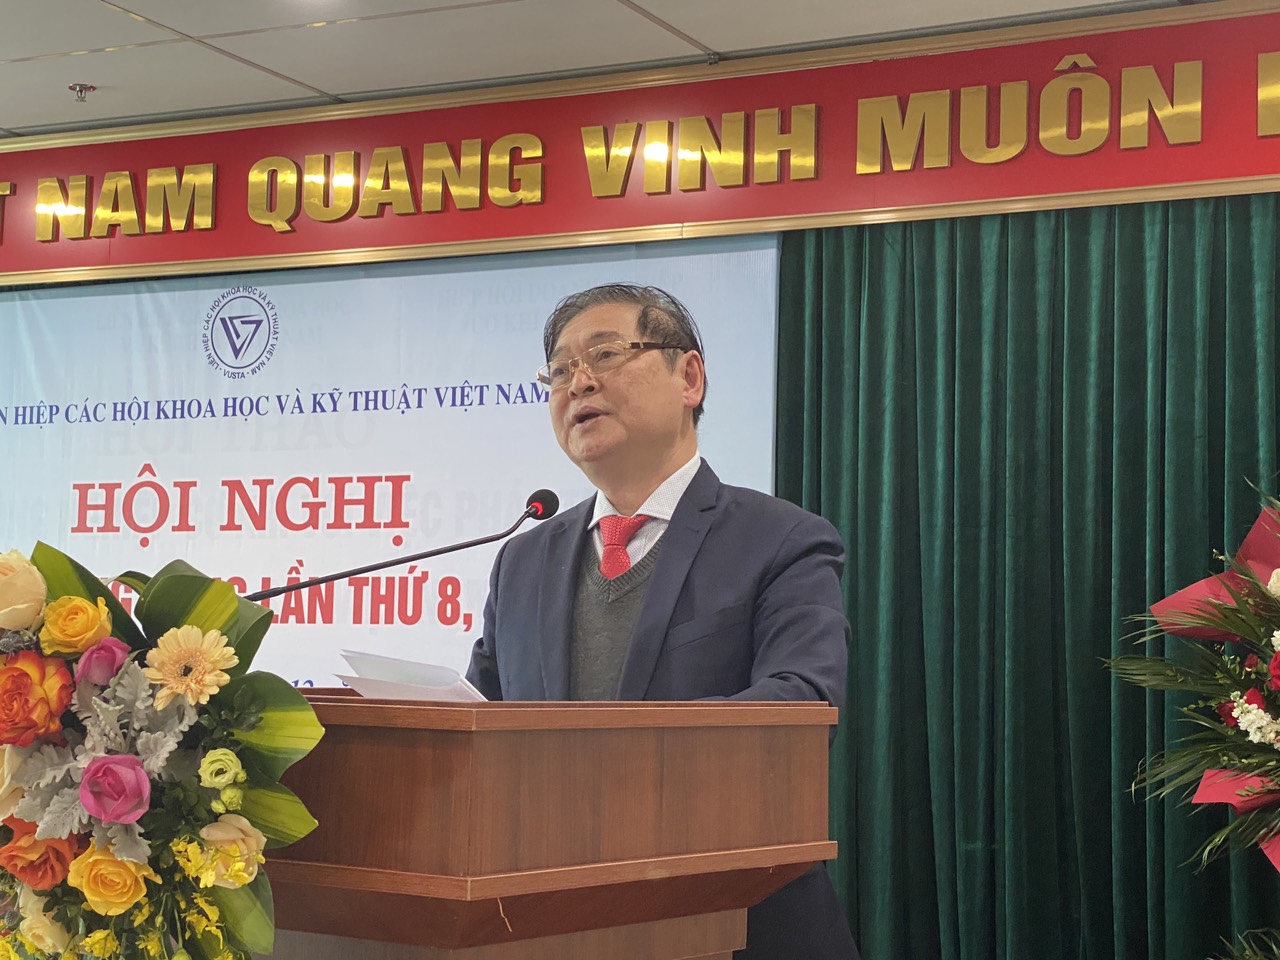 Phát huy vai trò của Liên hiệp Hội Việt Nam trong tình hình mới